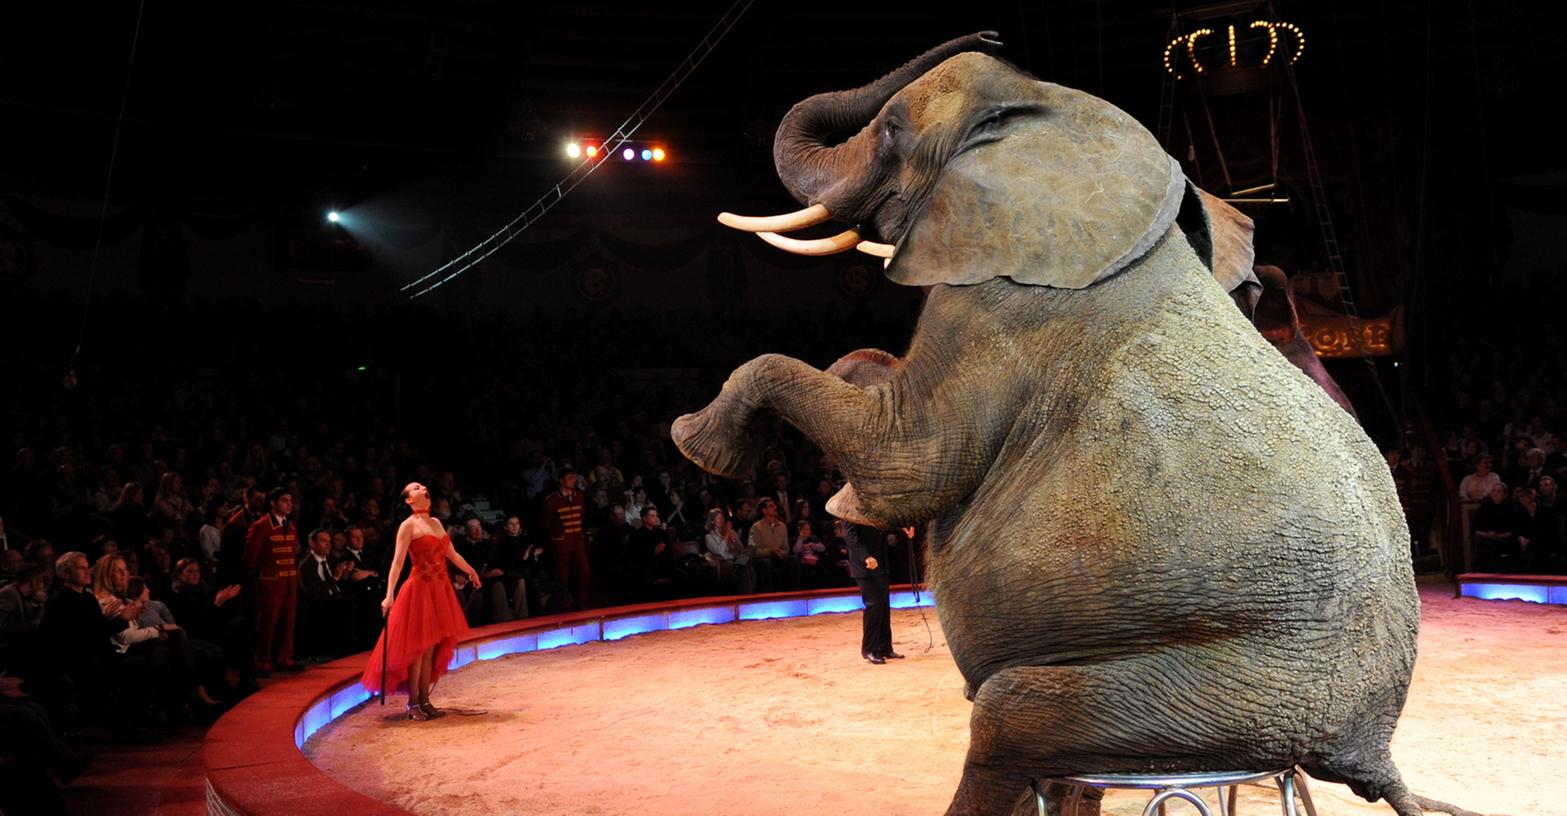 Ein Elefant, der dem Publikum Kunststückchen präsentiert.  Ob exotische Tiere in den Zirkus gehören, daran scheiden sich die Geister.